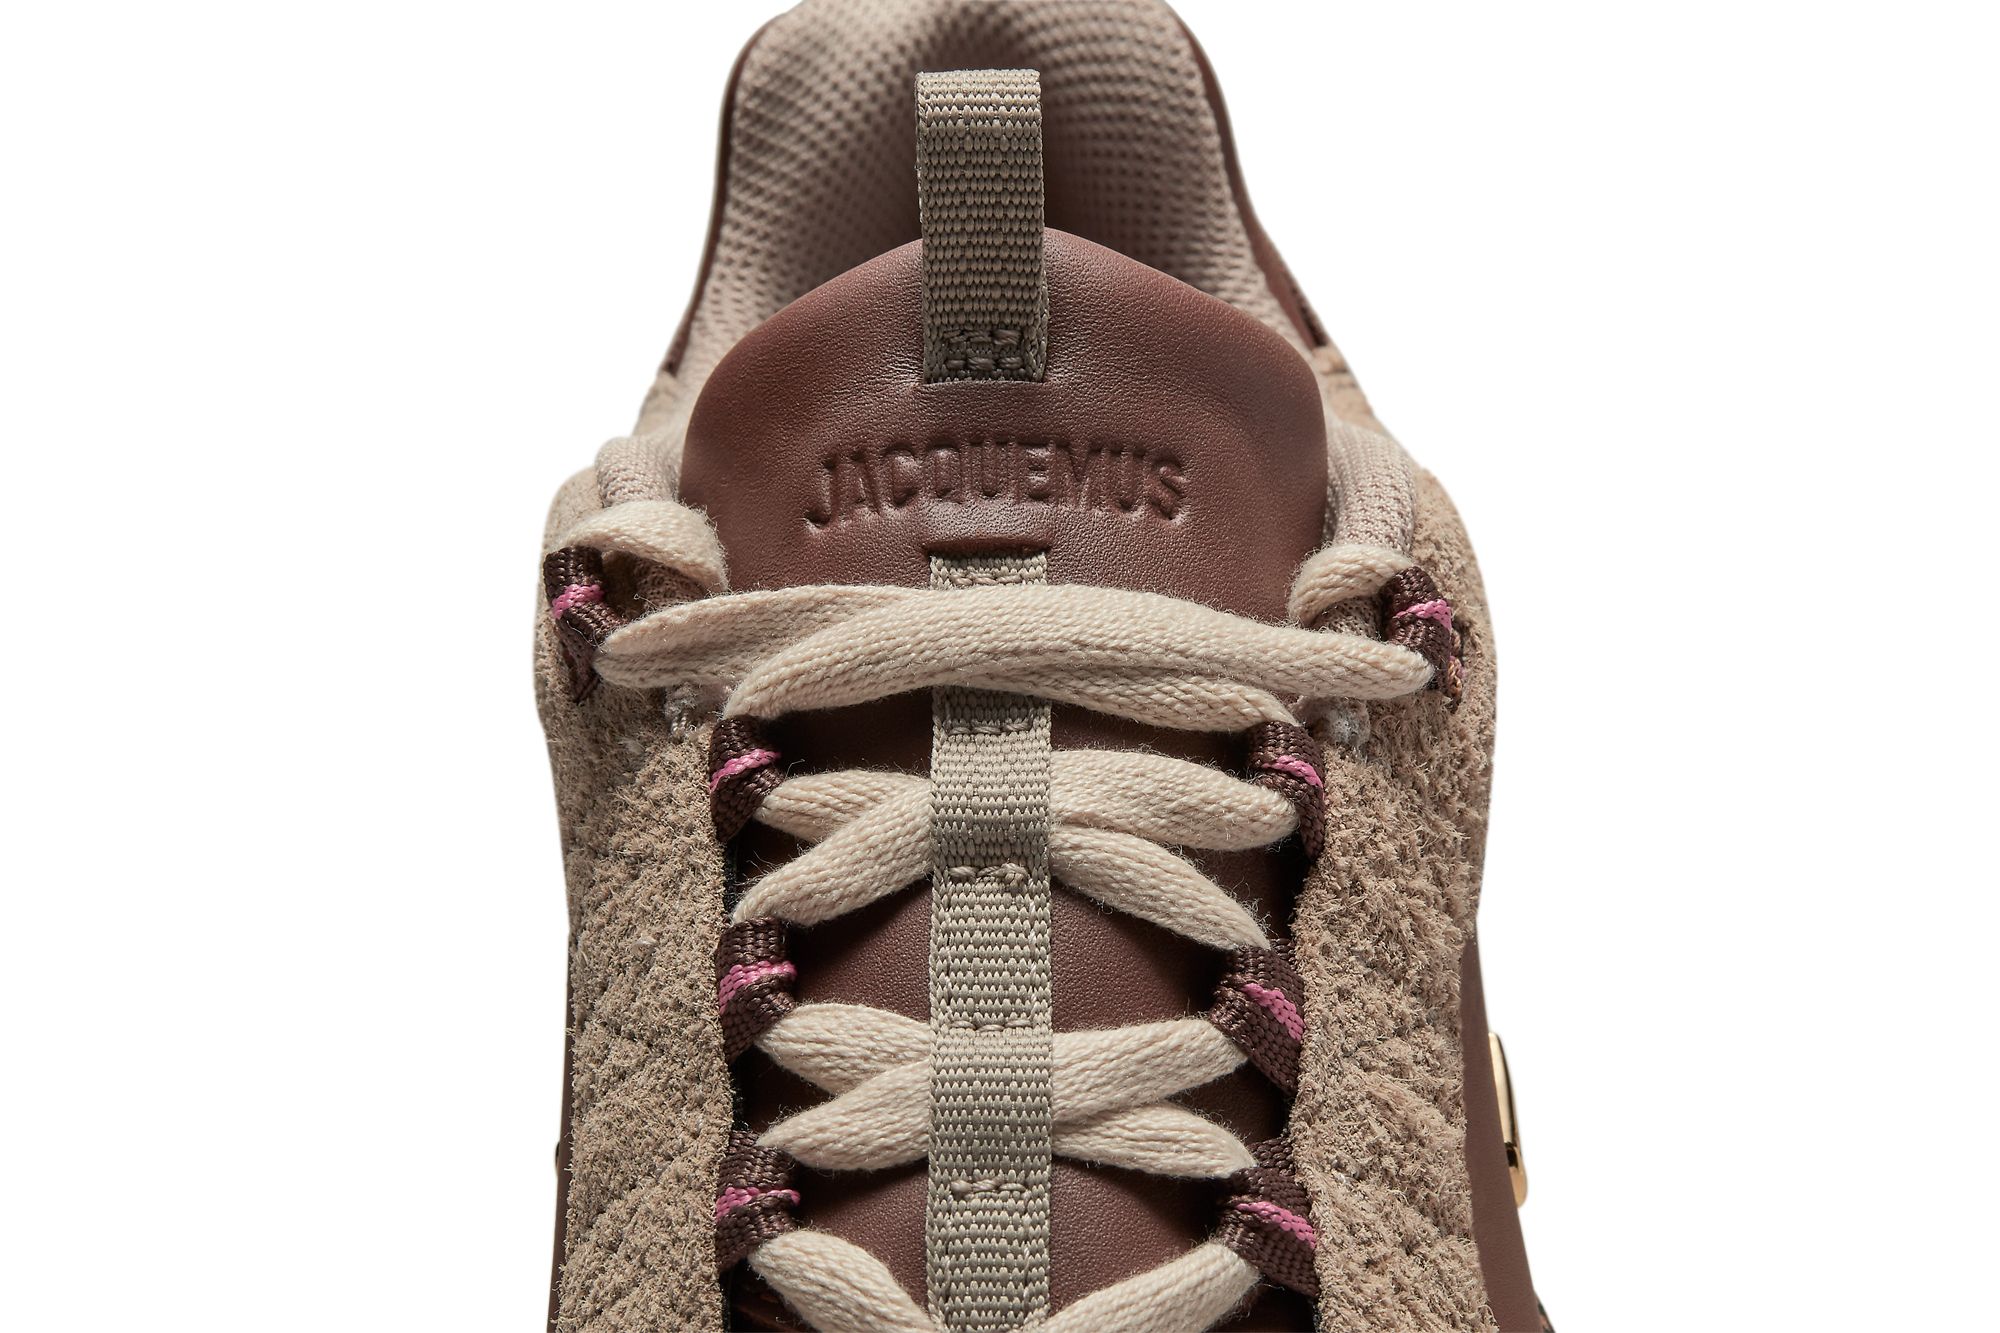 Jacquemus x Nike Air Humara